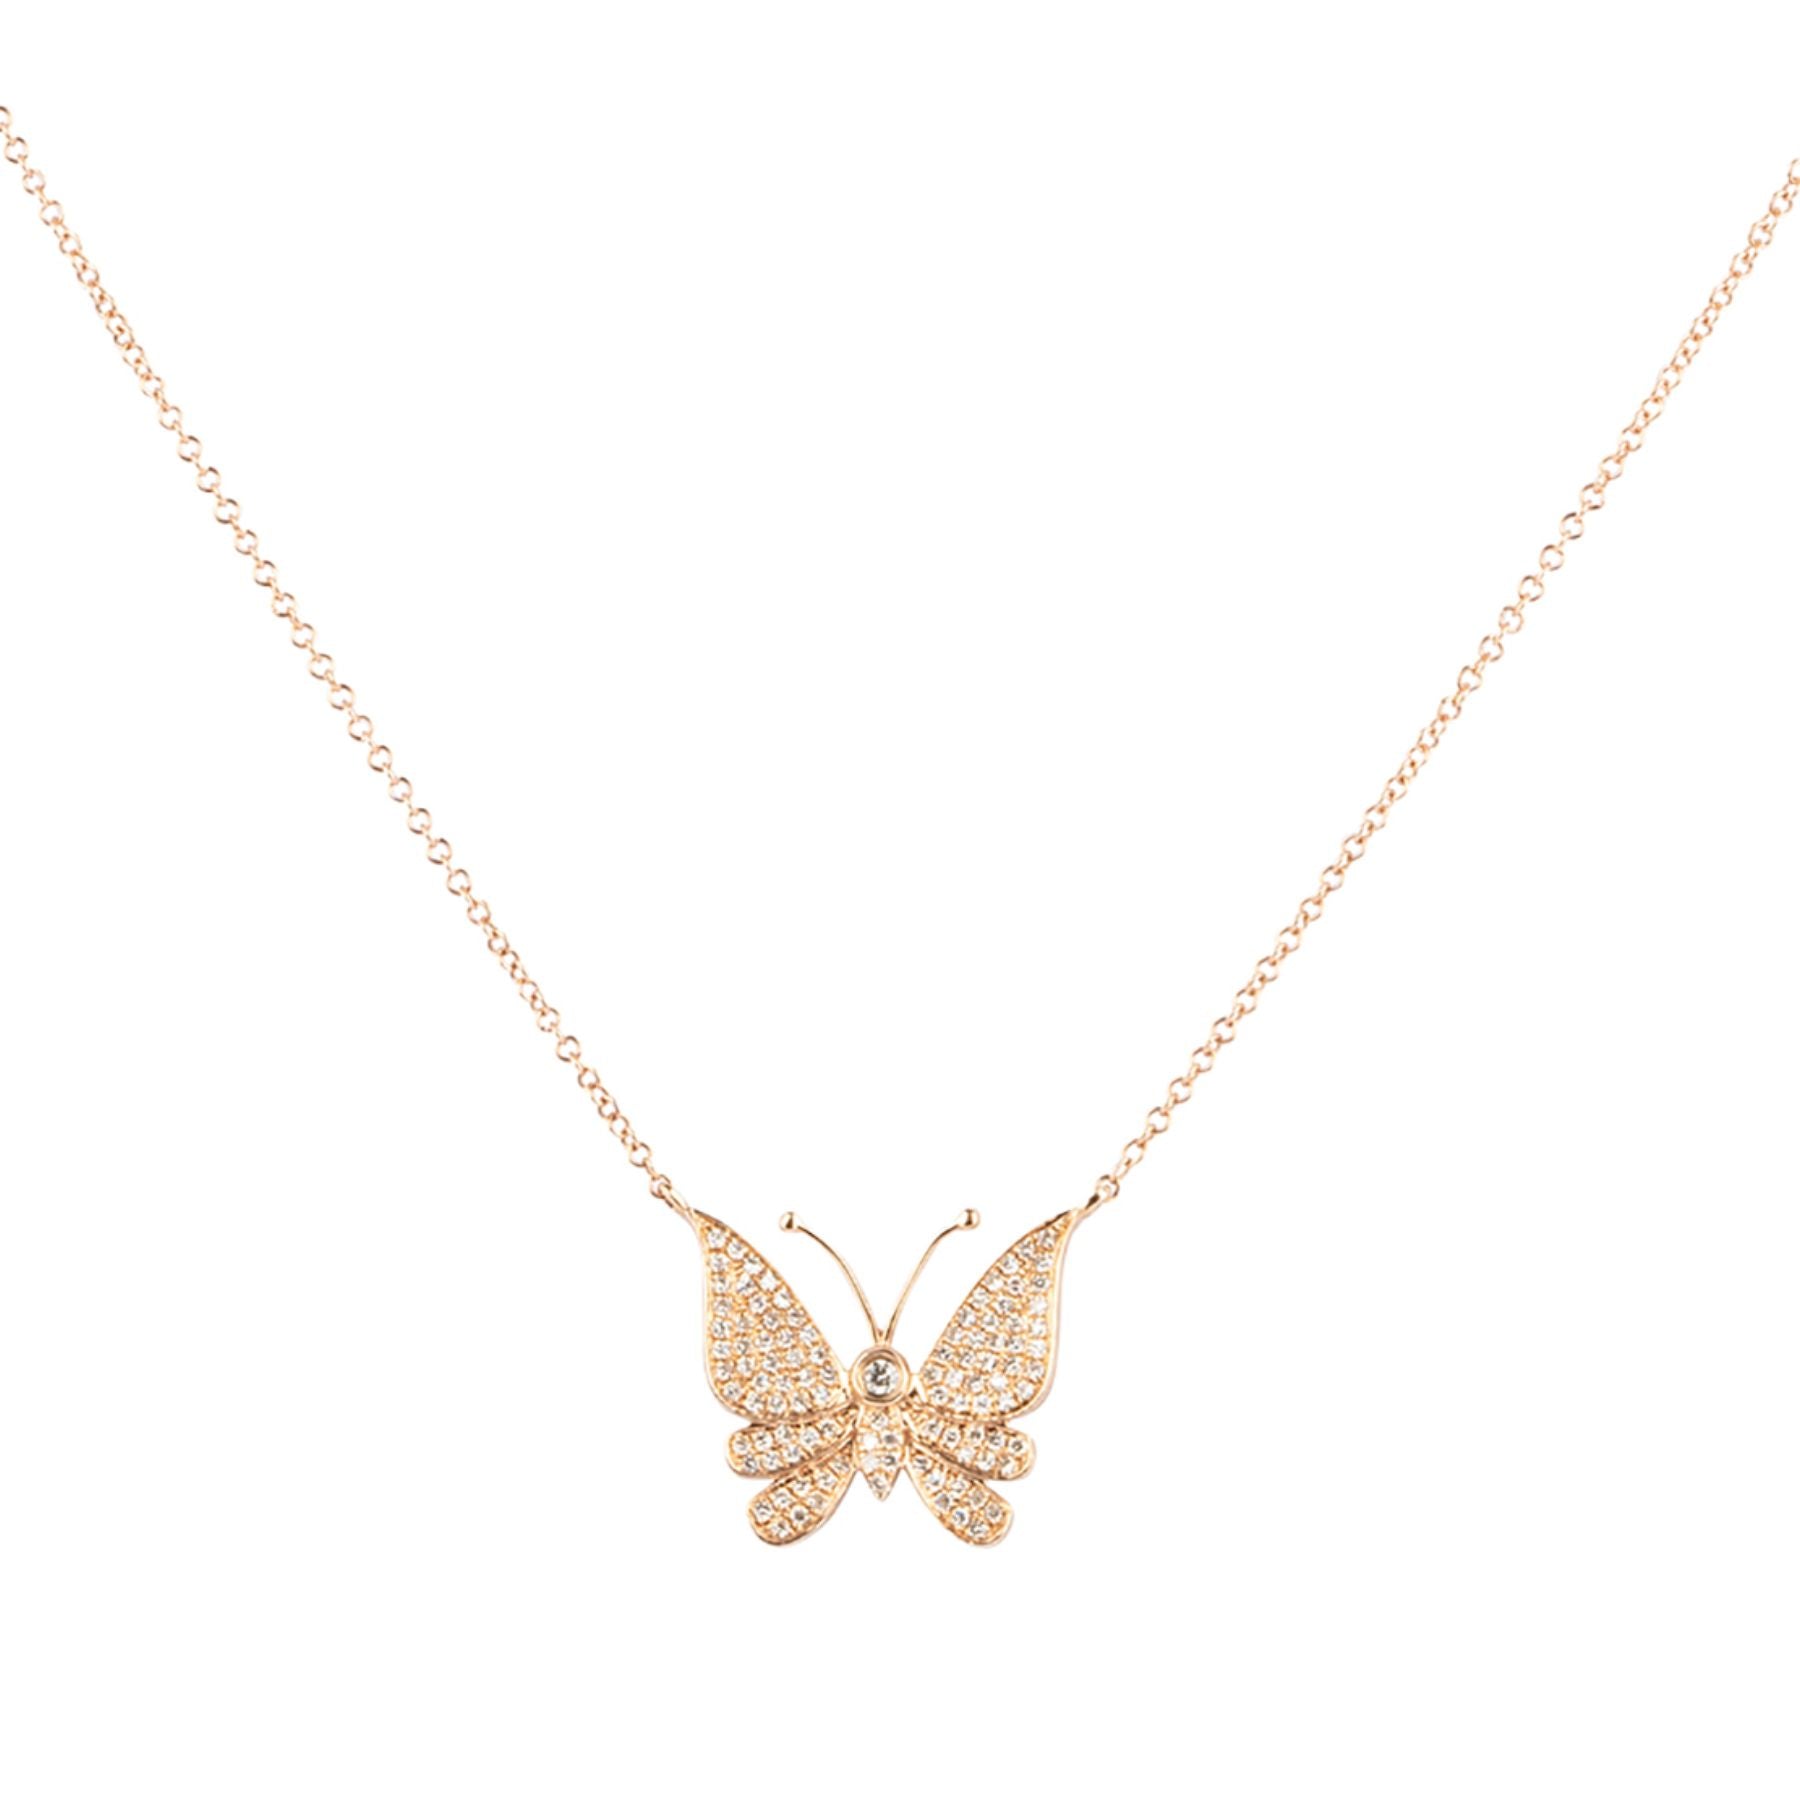 Butterfly Pave Diamond Necklace - Nina Segal Jewelry